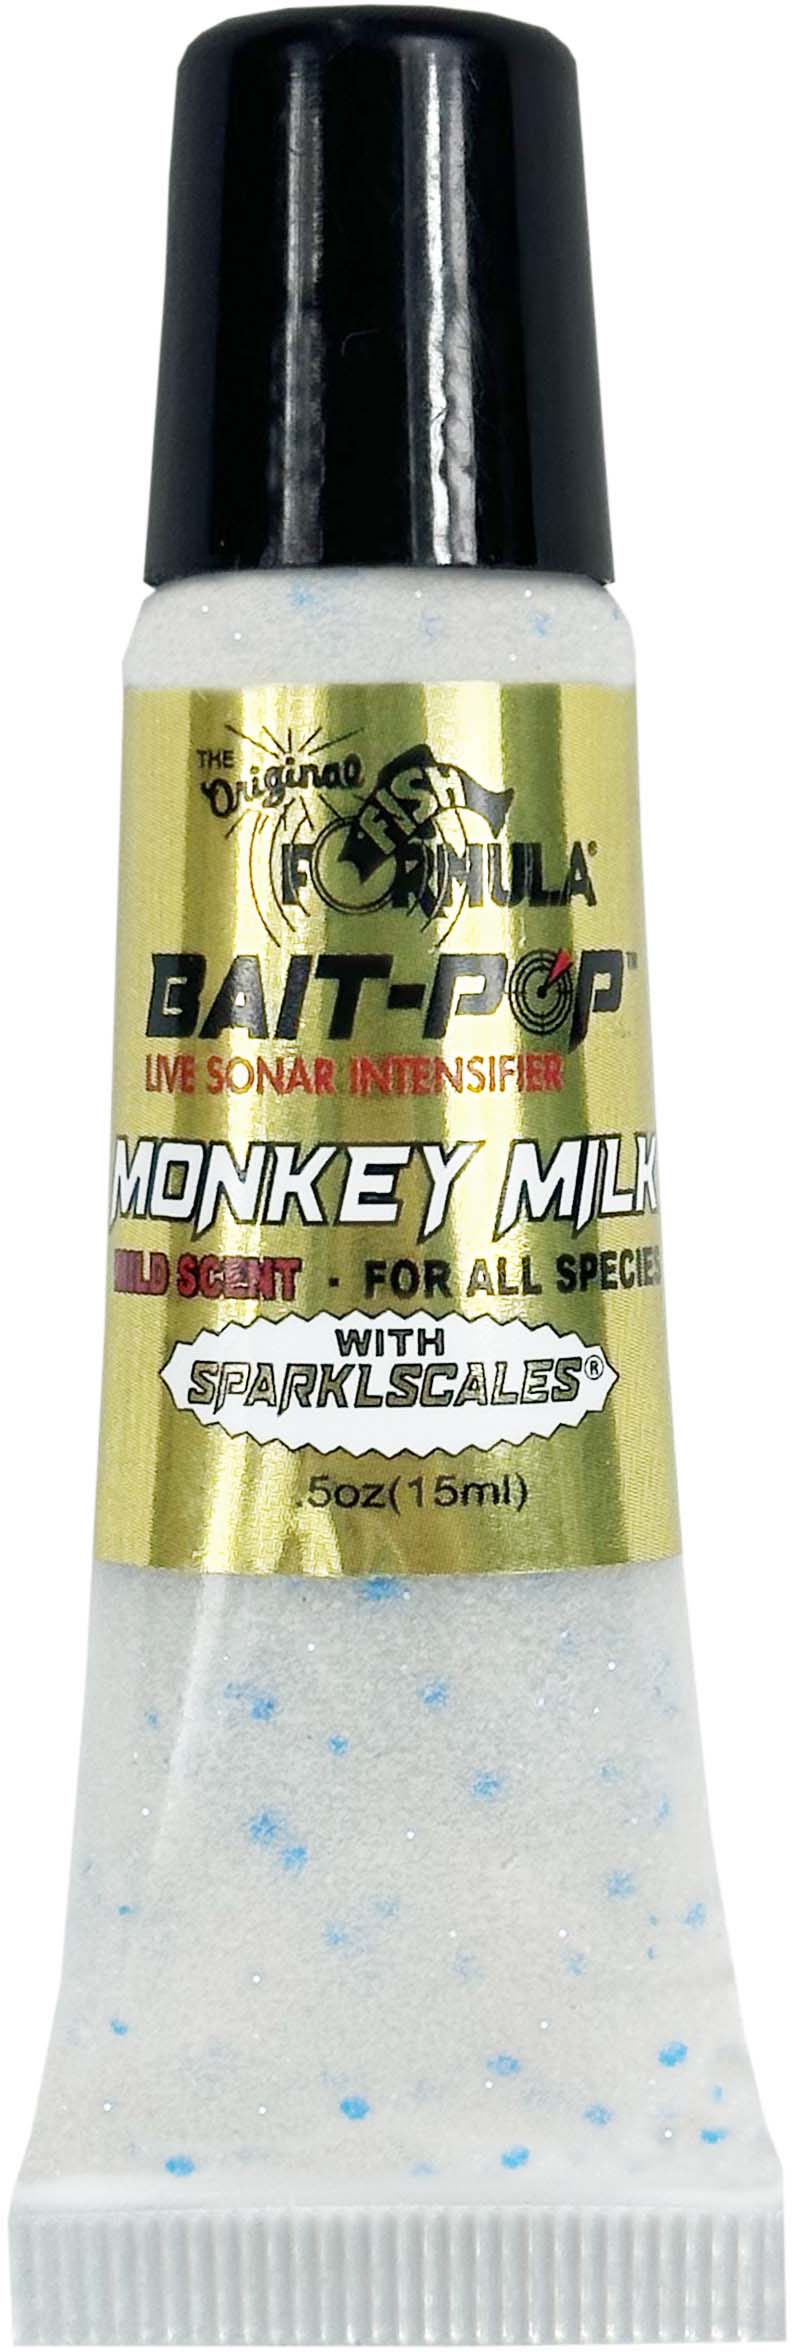 Bait-Pop Live Sonar Intensifier Monkey Milk